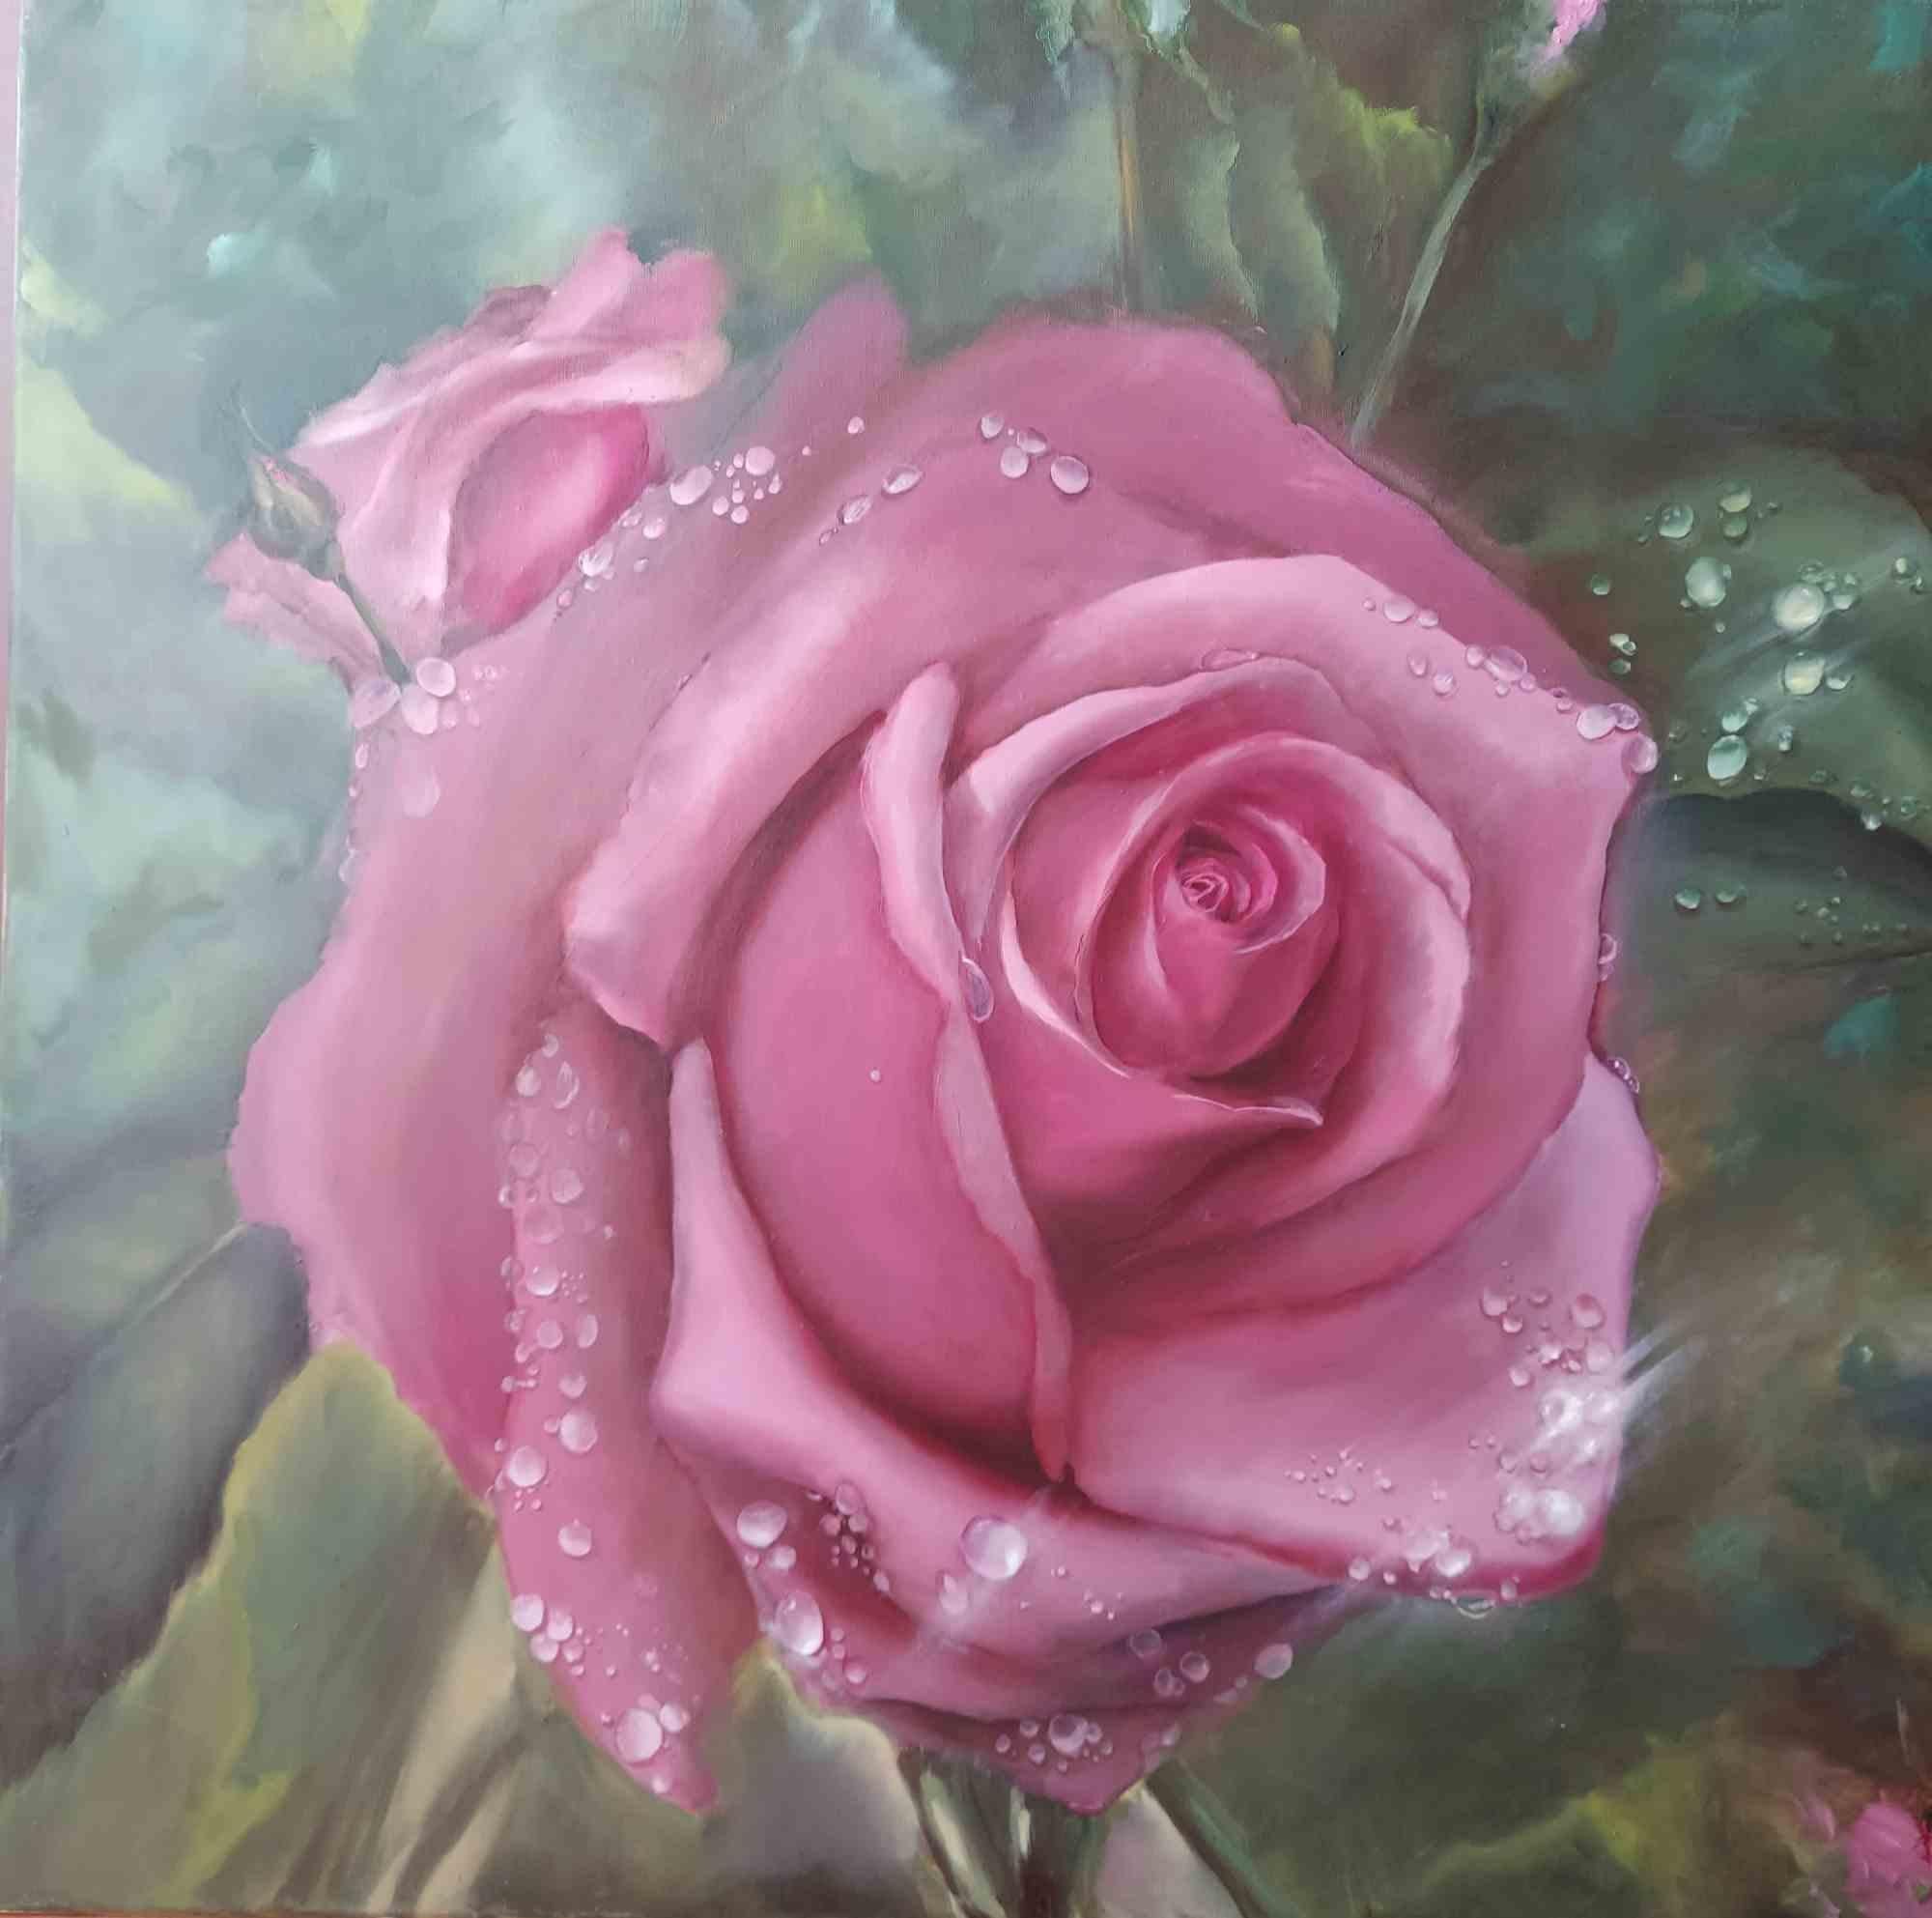 oil paint rose